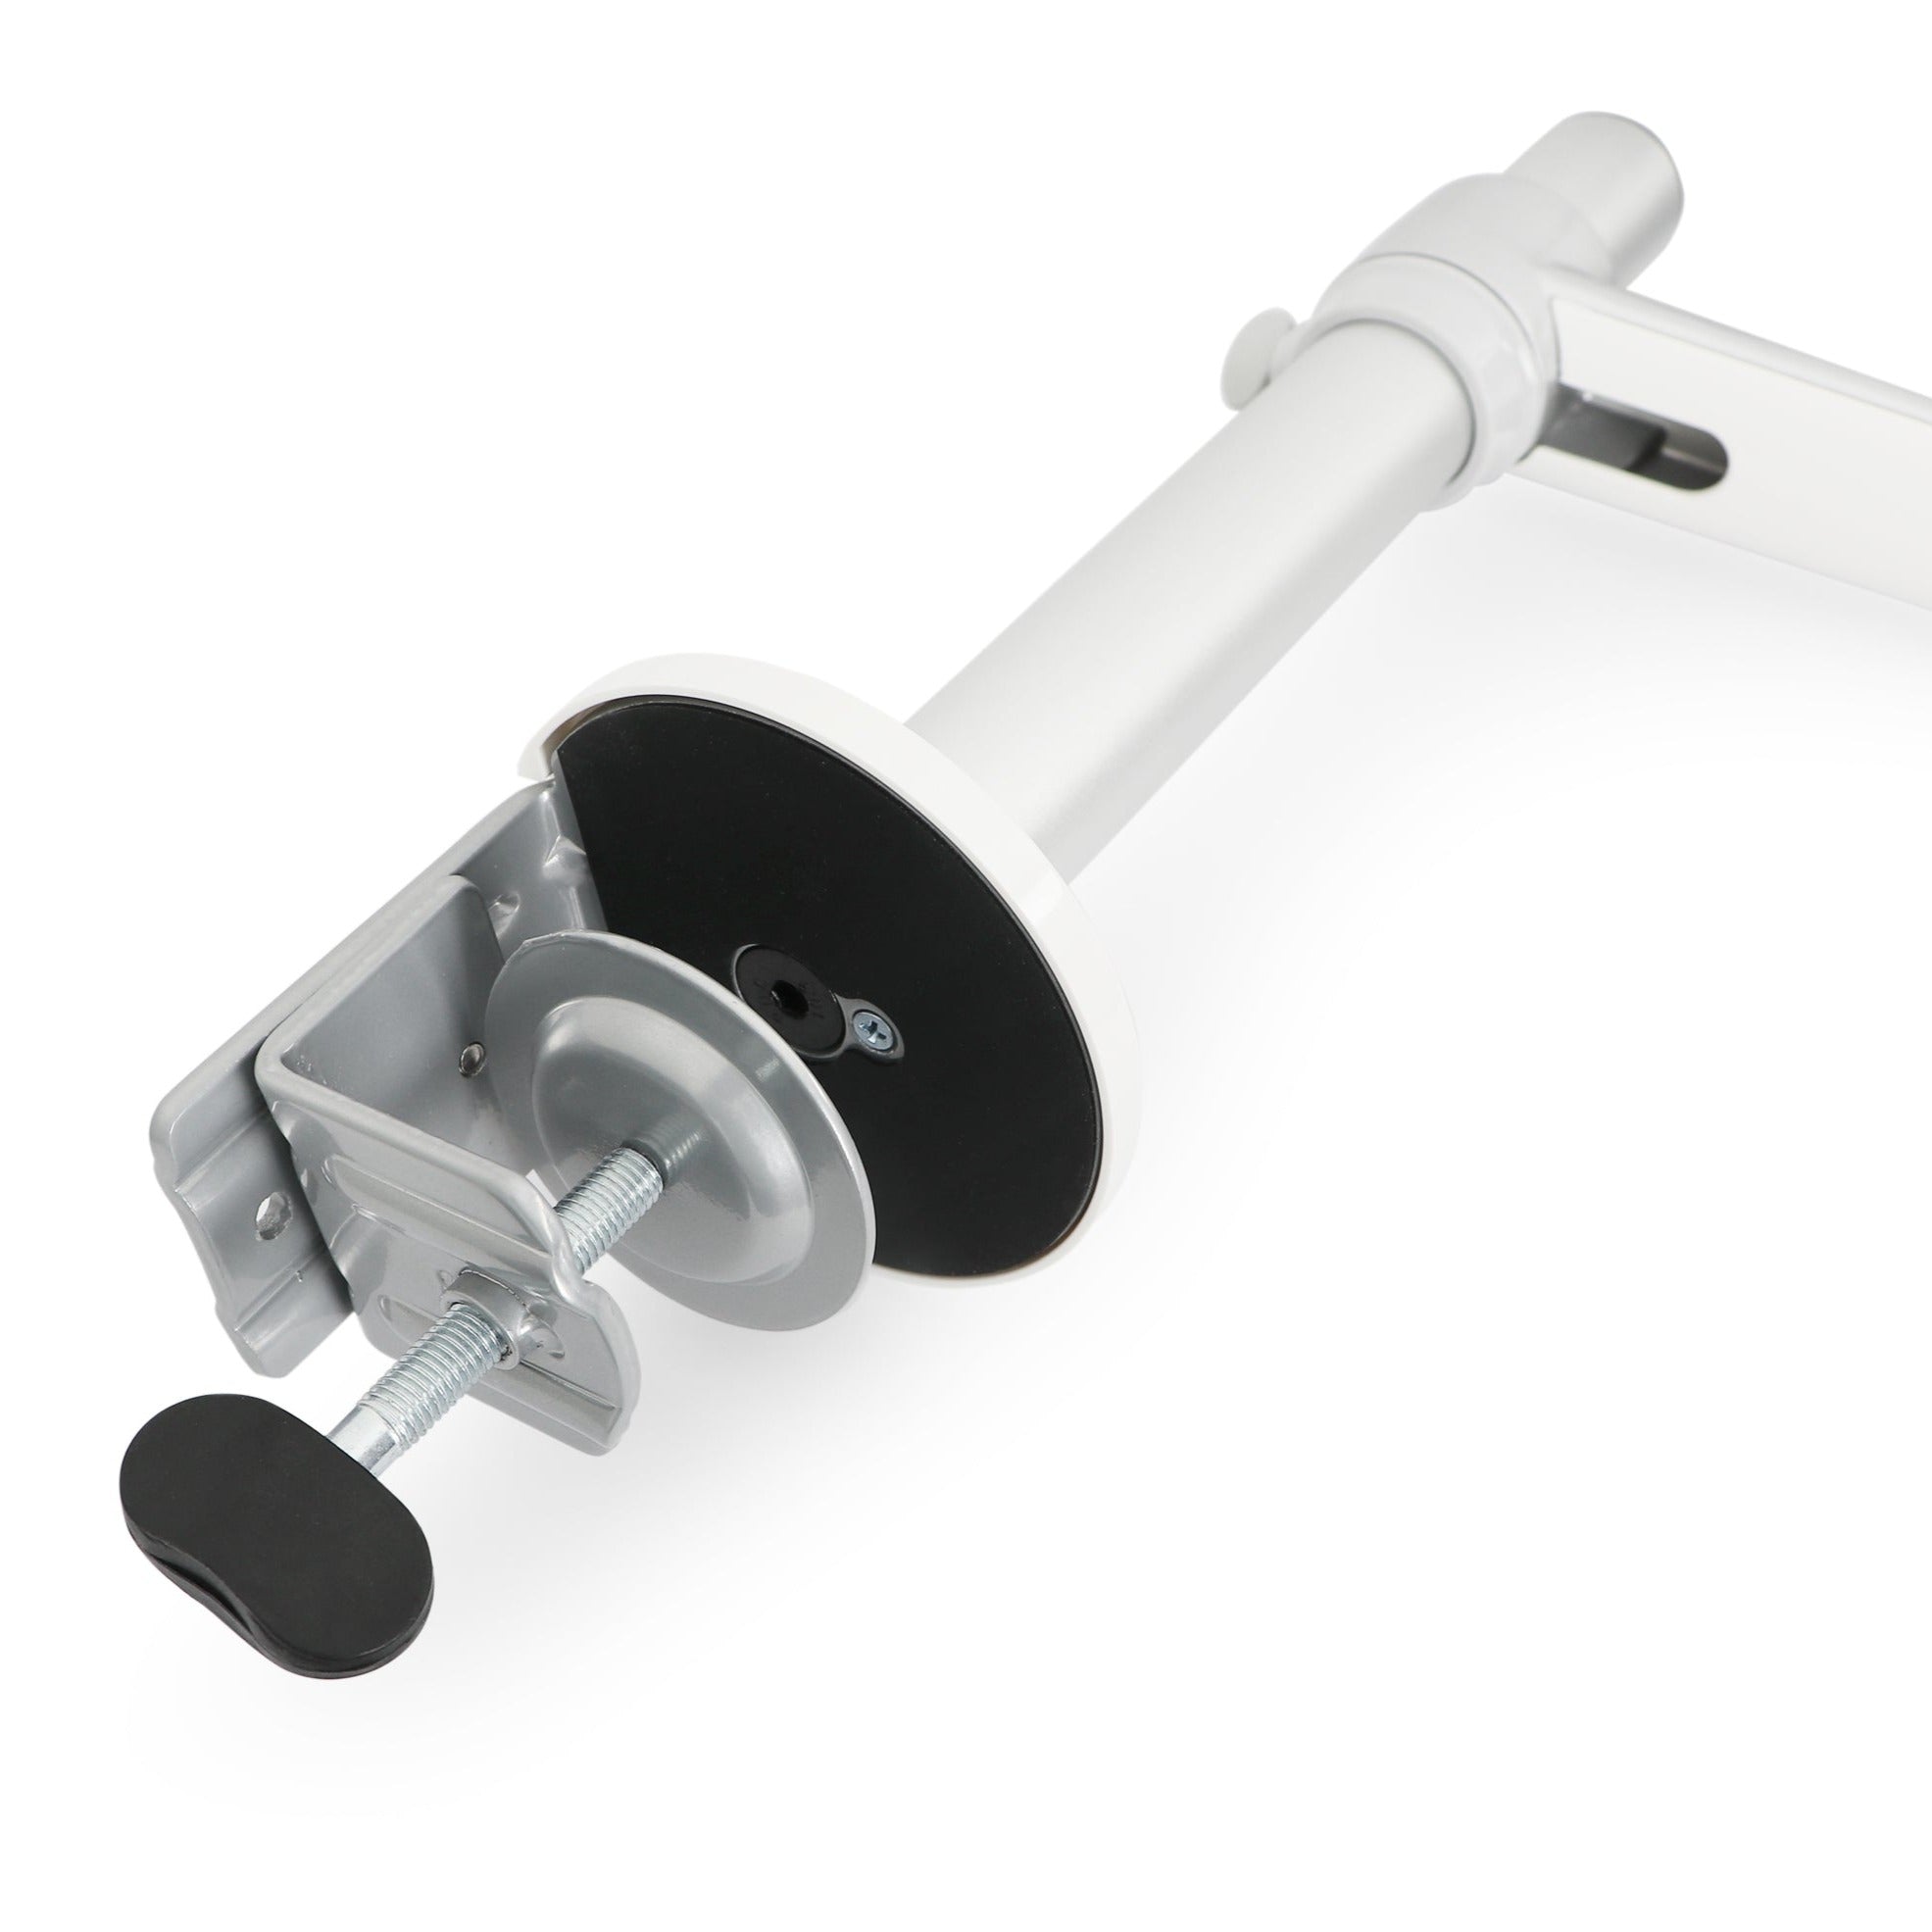 Single Monitor Arm with Swivel Mount Desk Mount Bracket Silver